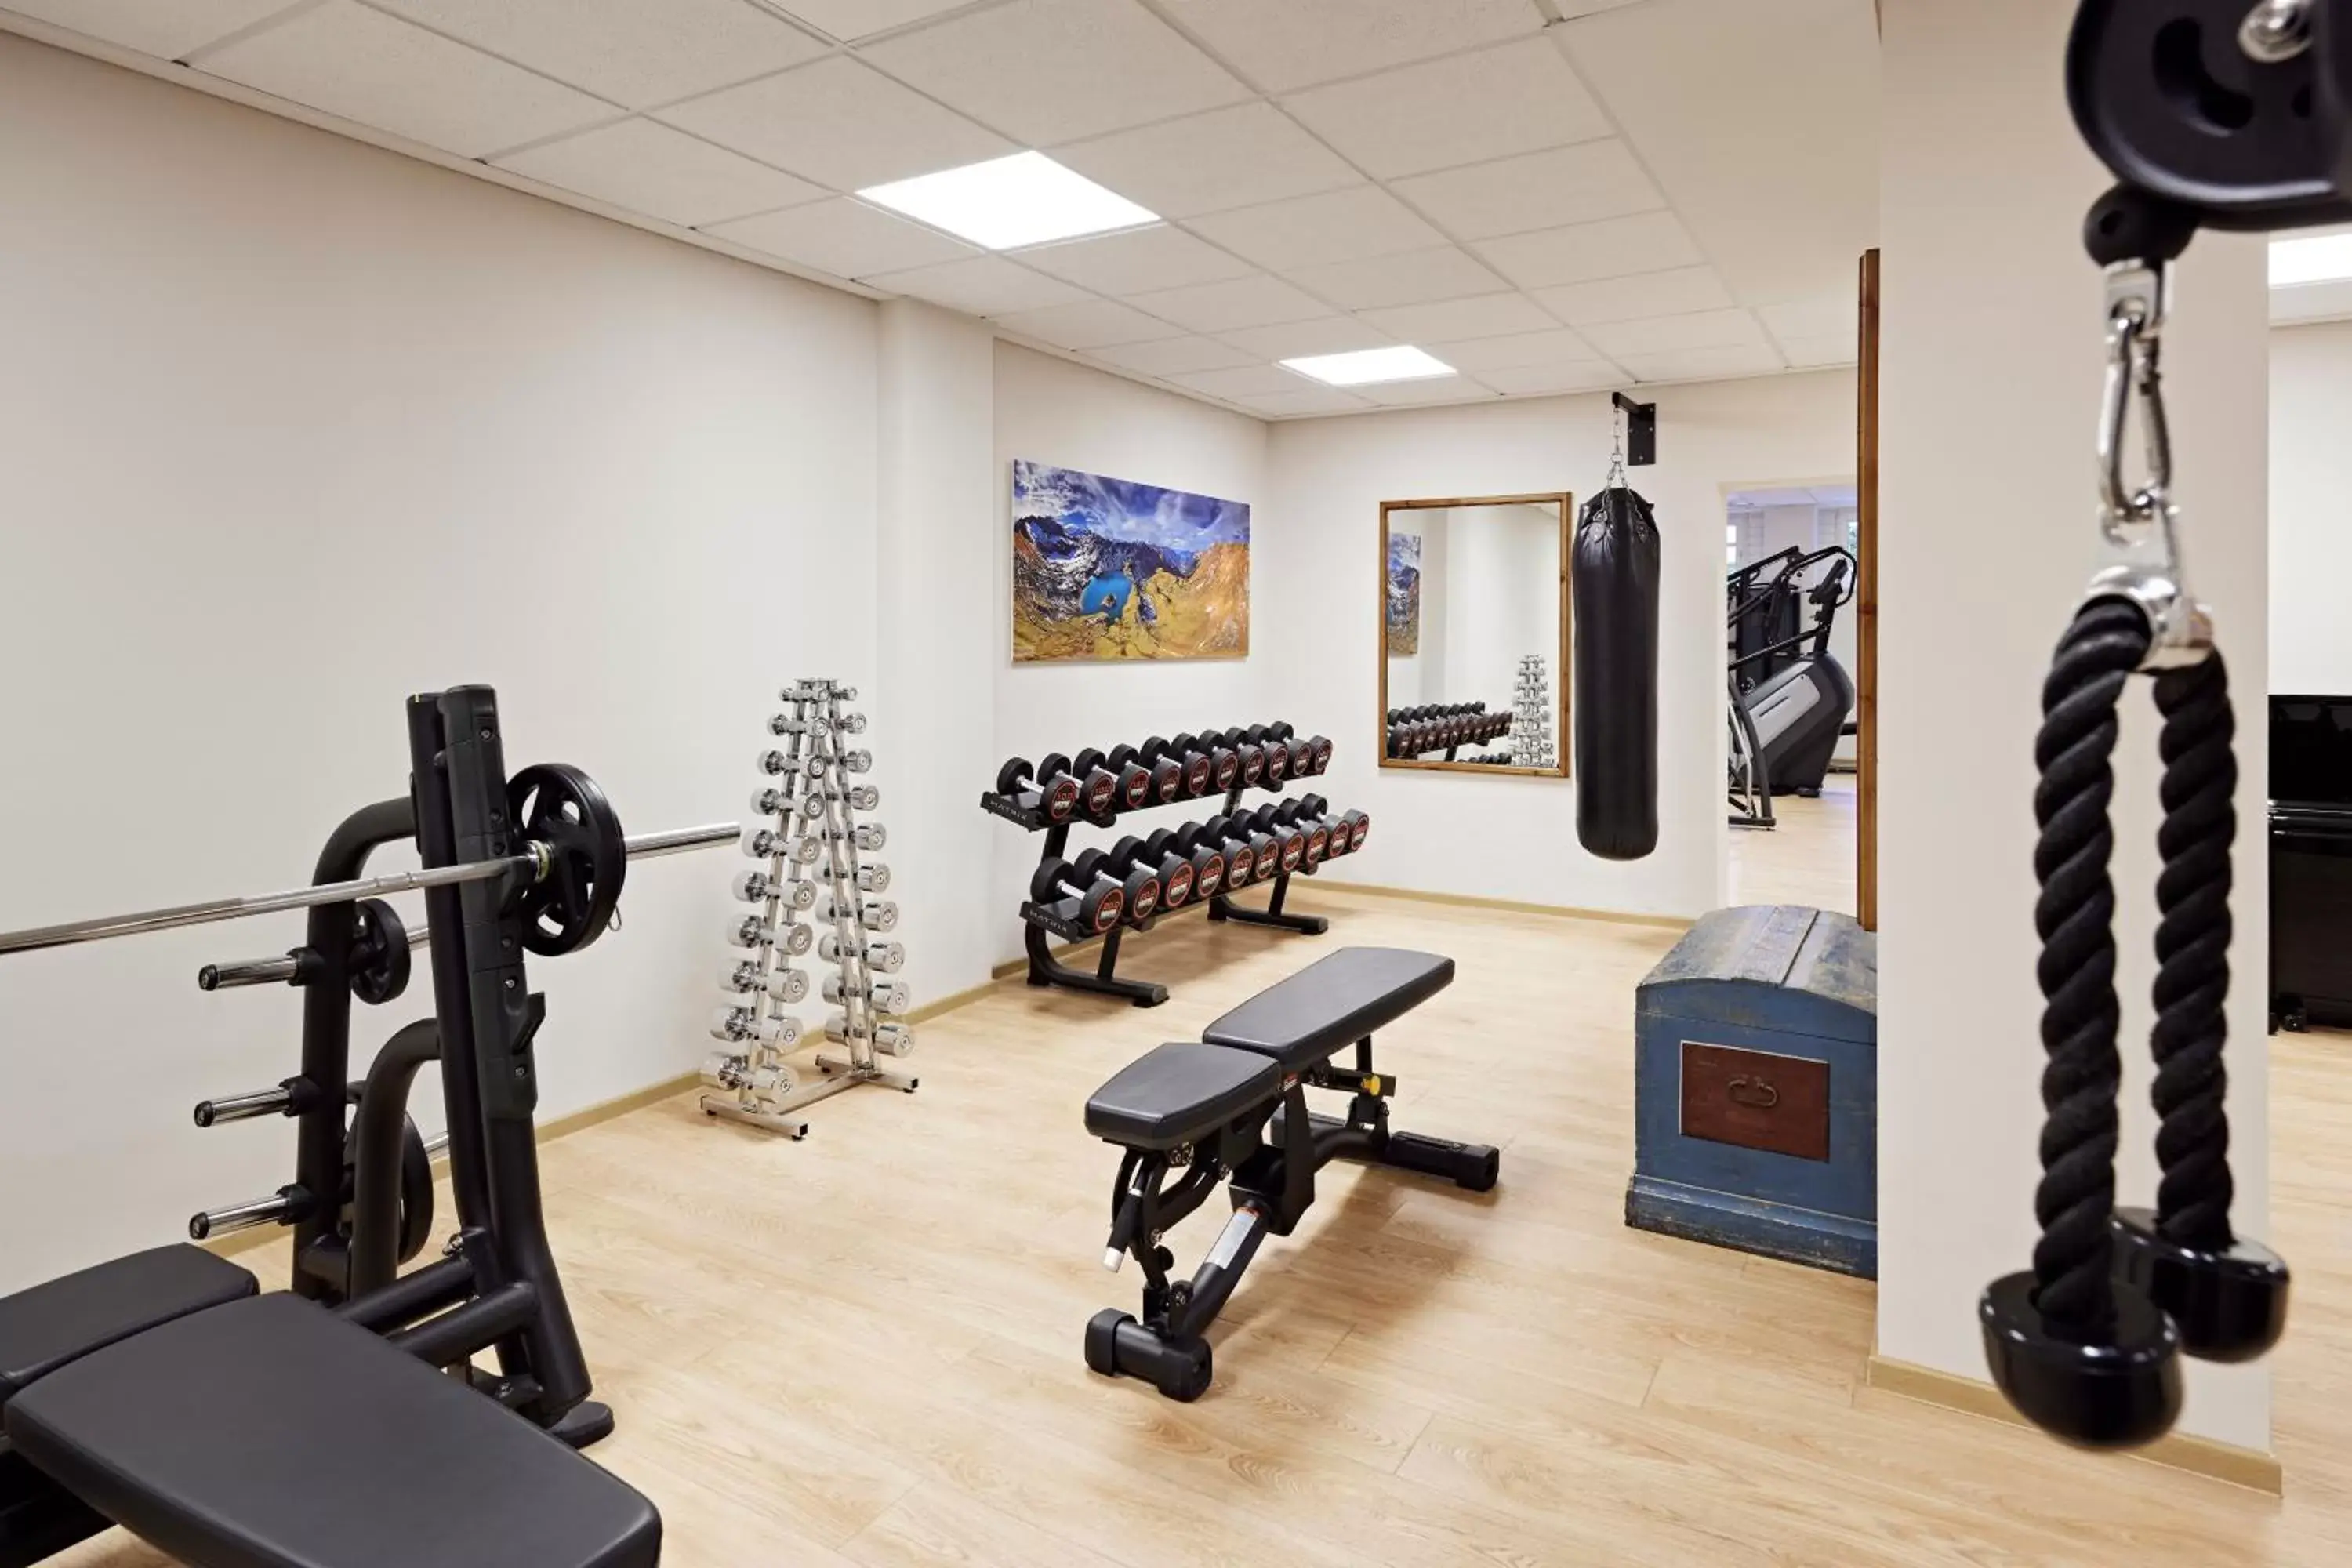 Fitness centre/facilities, Fitness Center/Facilities in Lindner Hotel Oberstaufen Parkhotel, part of JdV by Hyatt